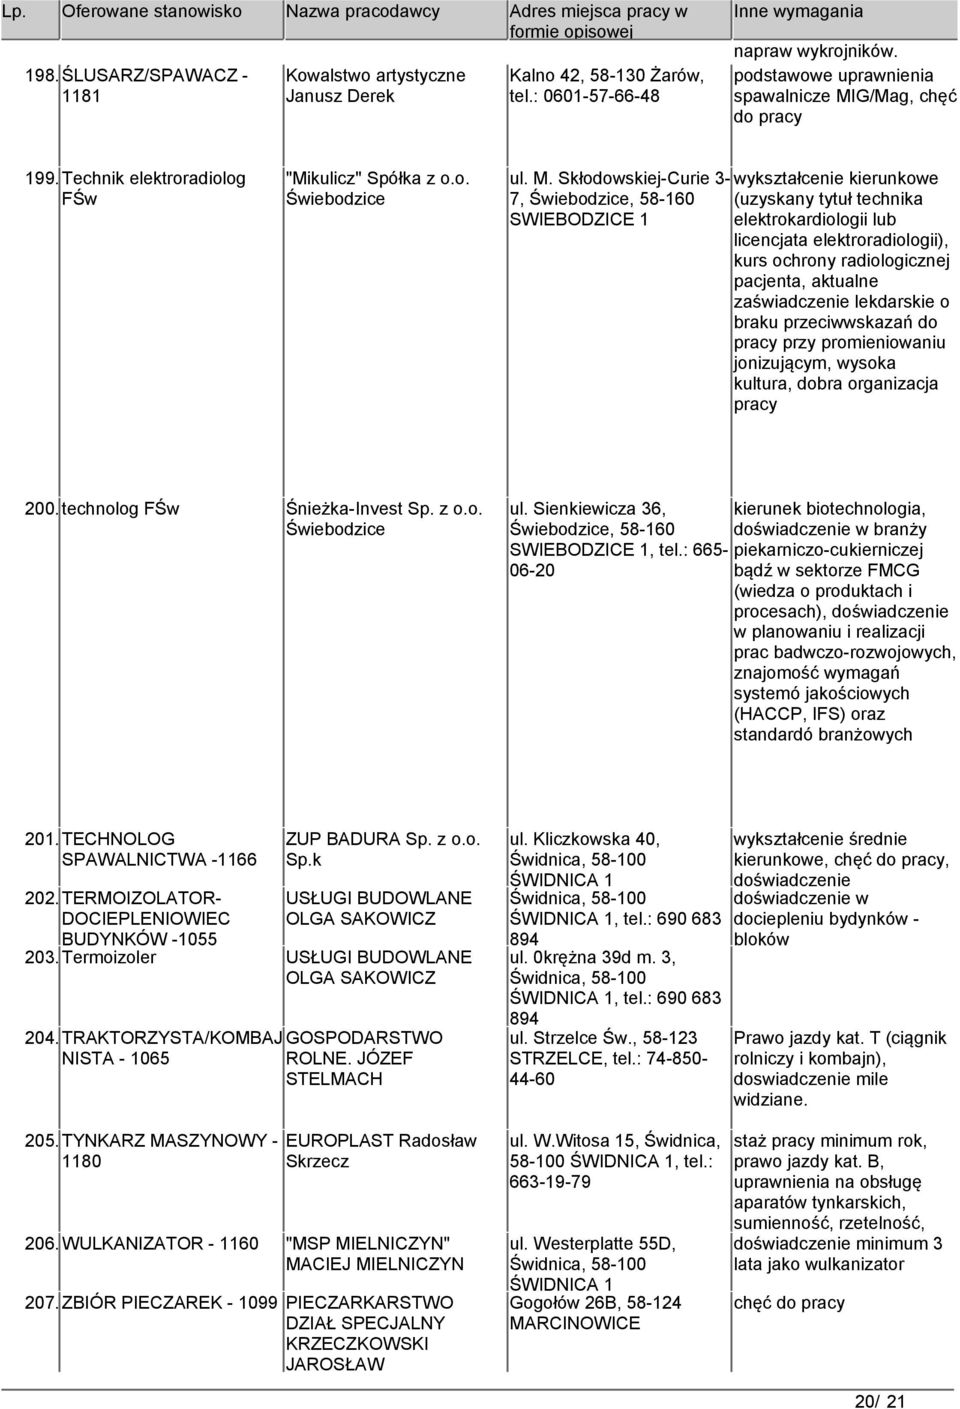 Skłodowskiej-Curie 3- wykształcenie kierunkowe 7, (uzyskany tytuł technika SWIEBODZICE 1 elektrokardiologii lub licencjata elektroradiologii), kurs ochrony radiologicznej pacjenta, aktualne